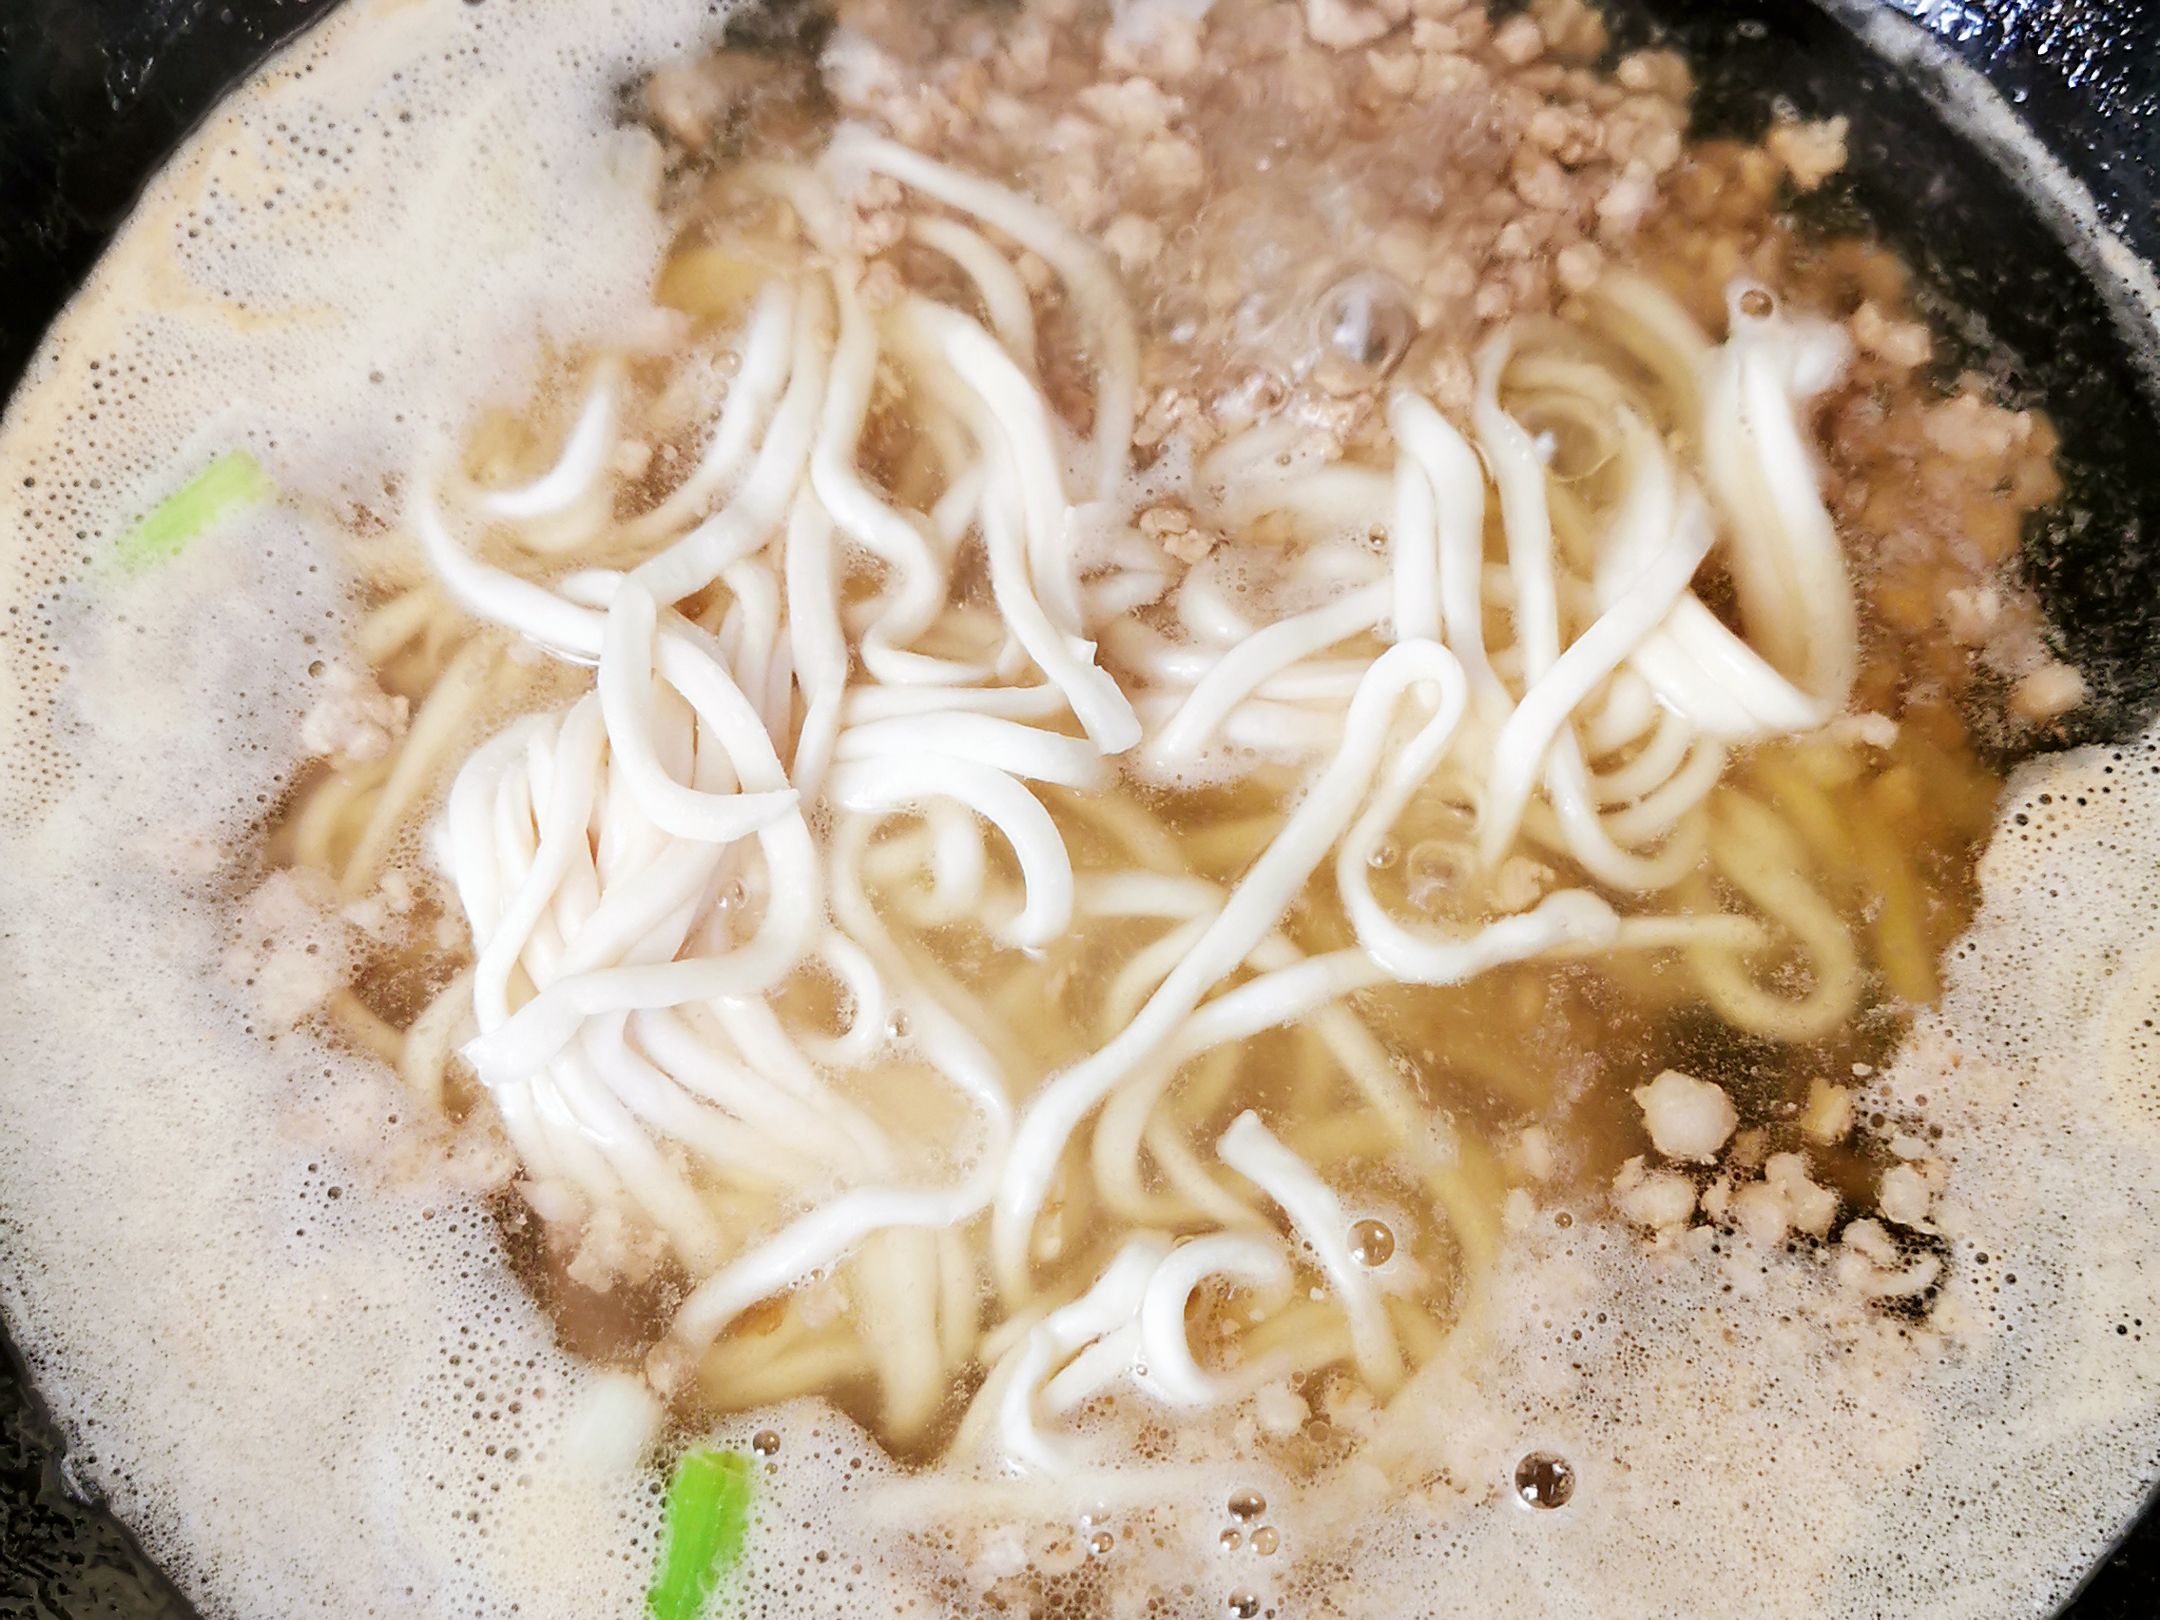 Horn Melon Noodle Soup recipe